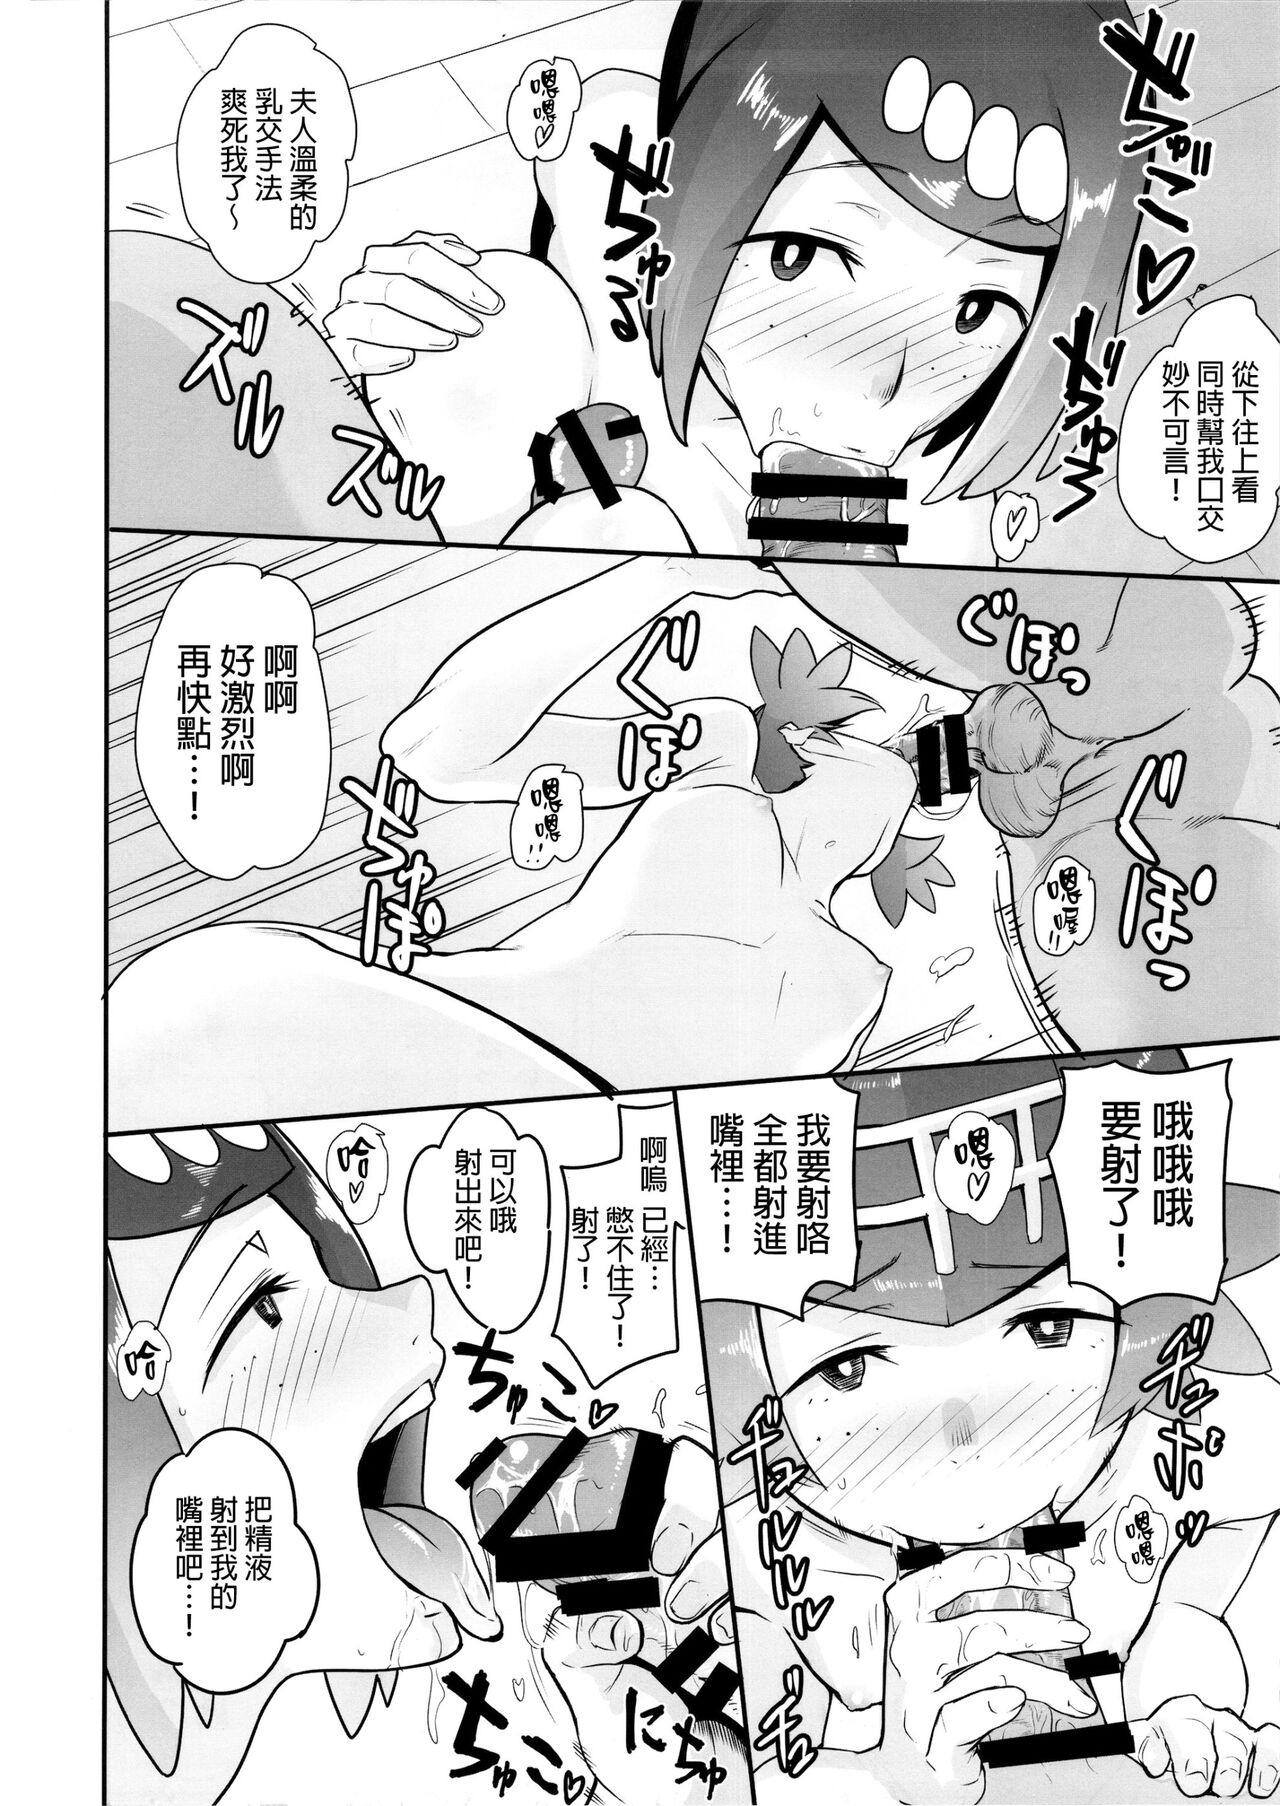 Trans Alola no Yoru no Sugata 1-6 + Galar no Yoru no Sugata - Pokemon | pocket monsters Movies - Page 11